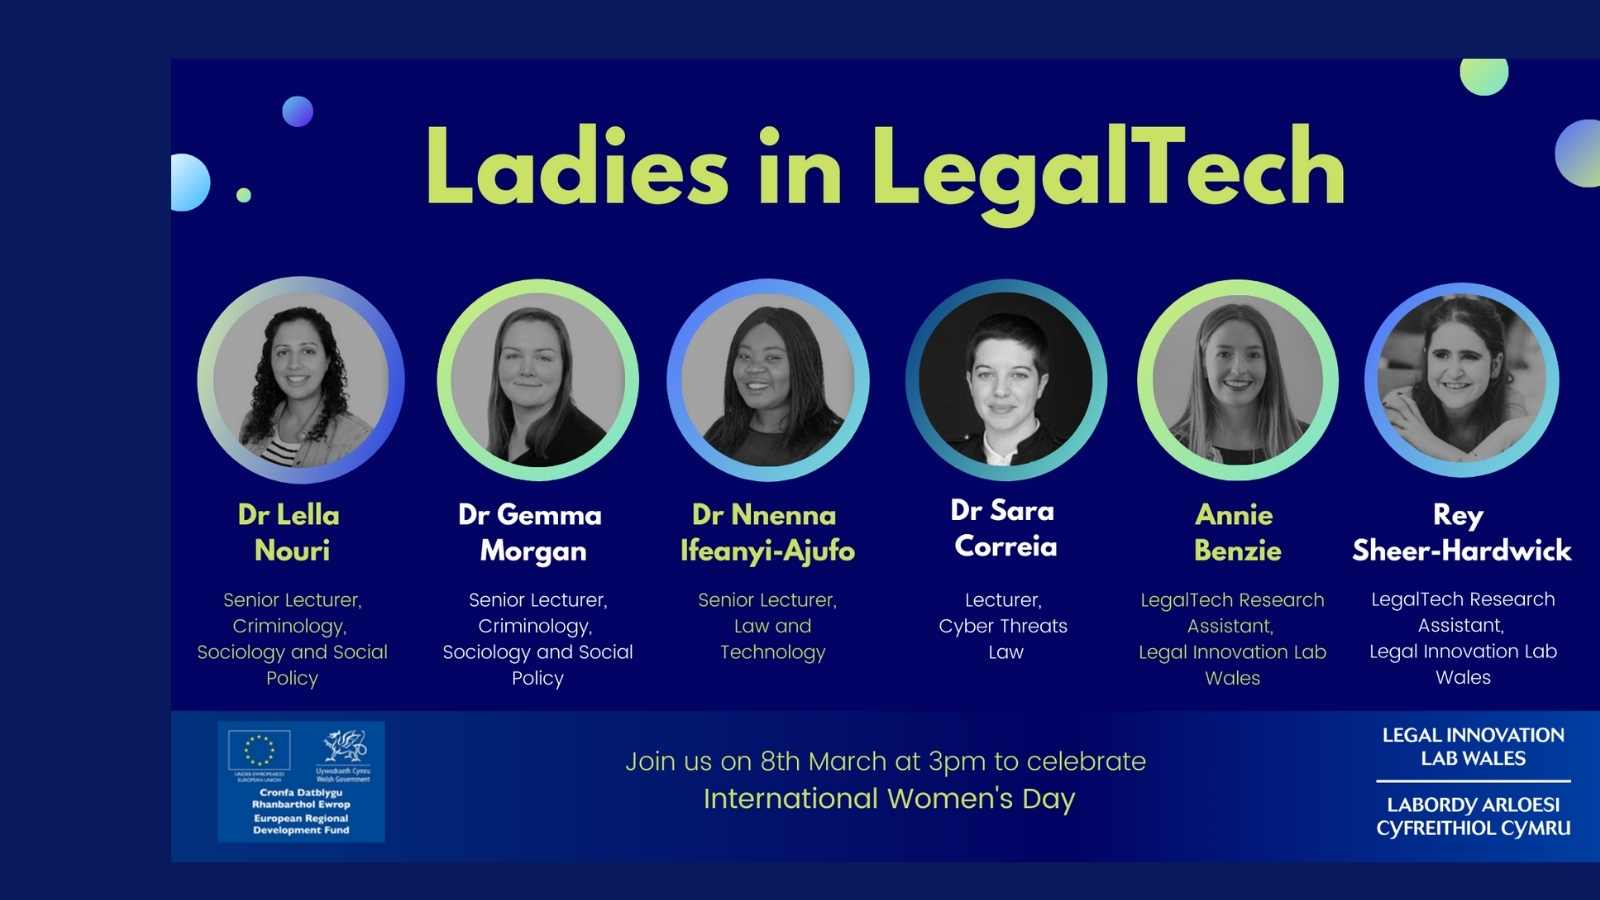 Ladies in LegalTech image